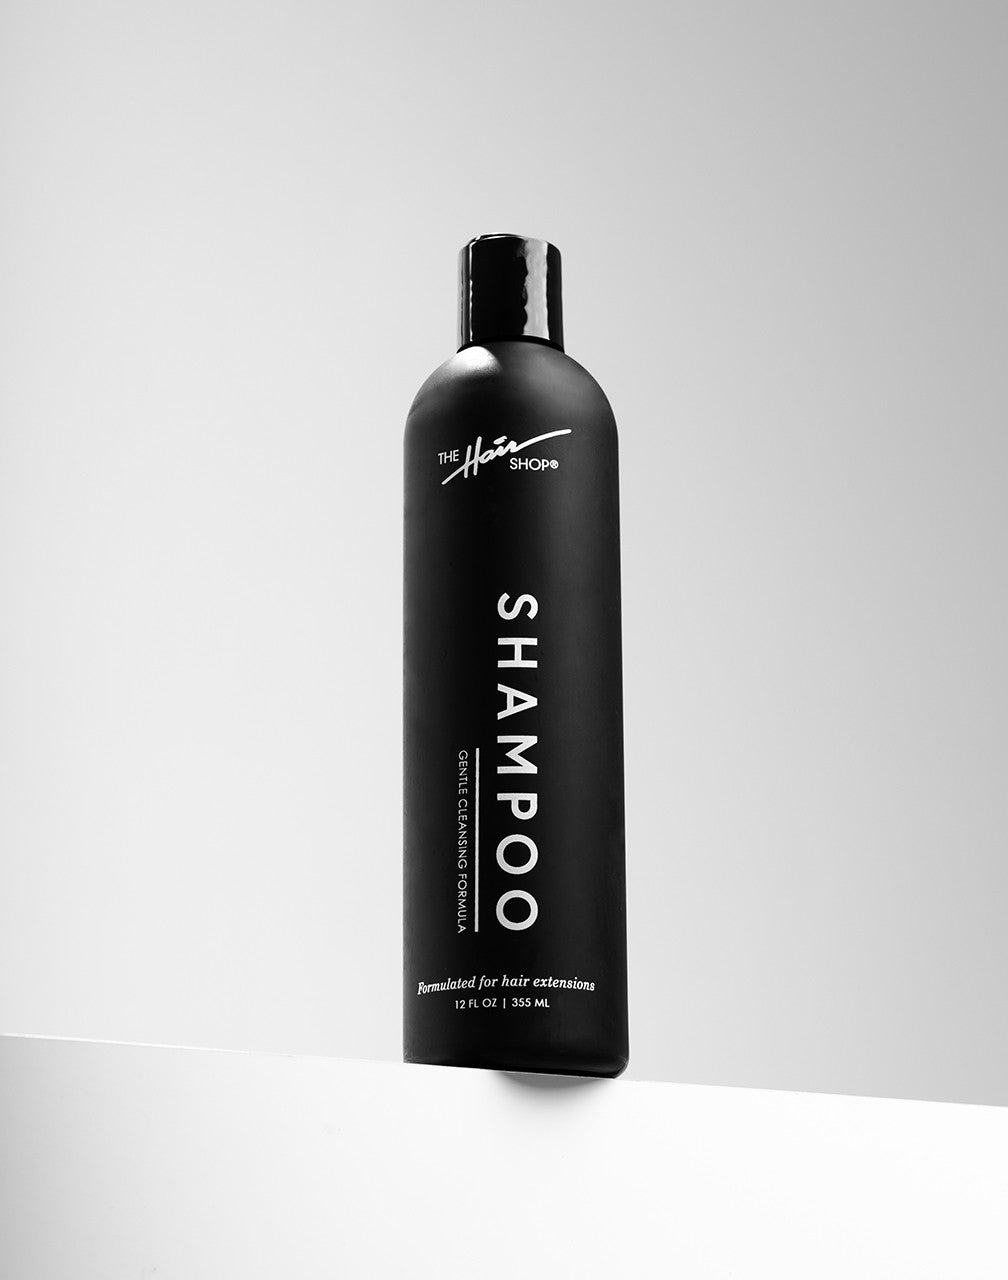 Shampoo – The Hair Shop,